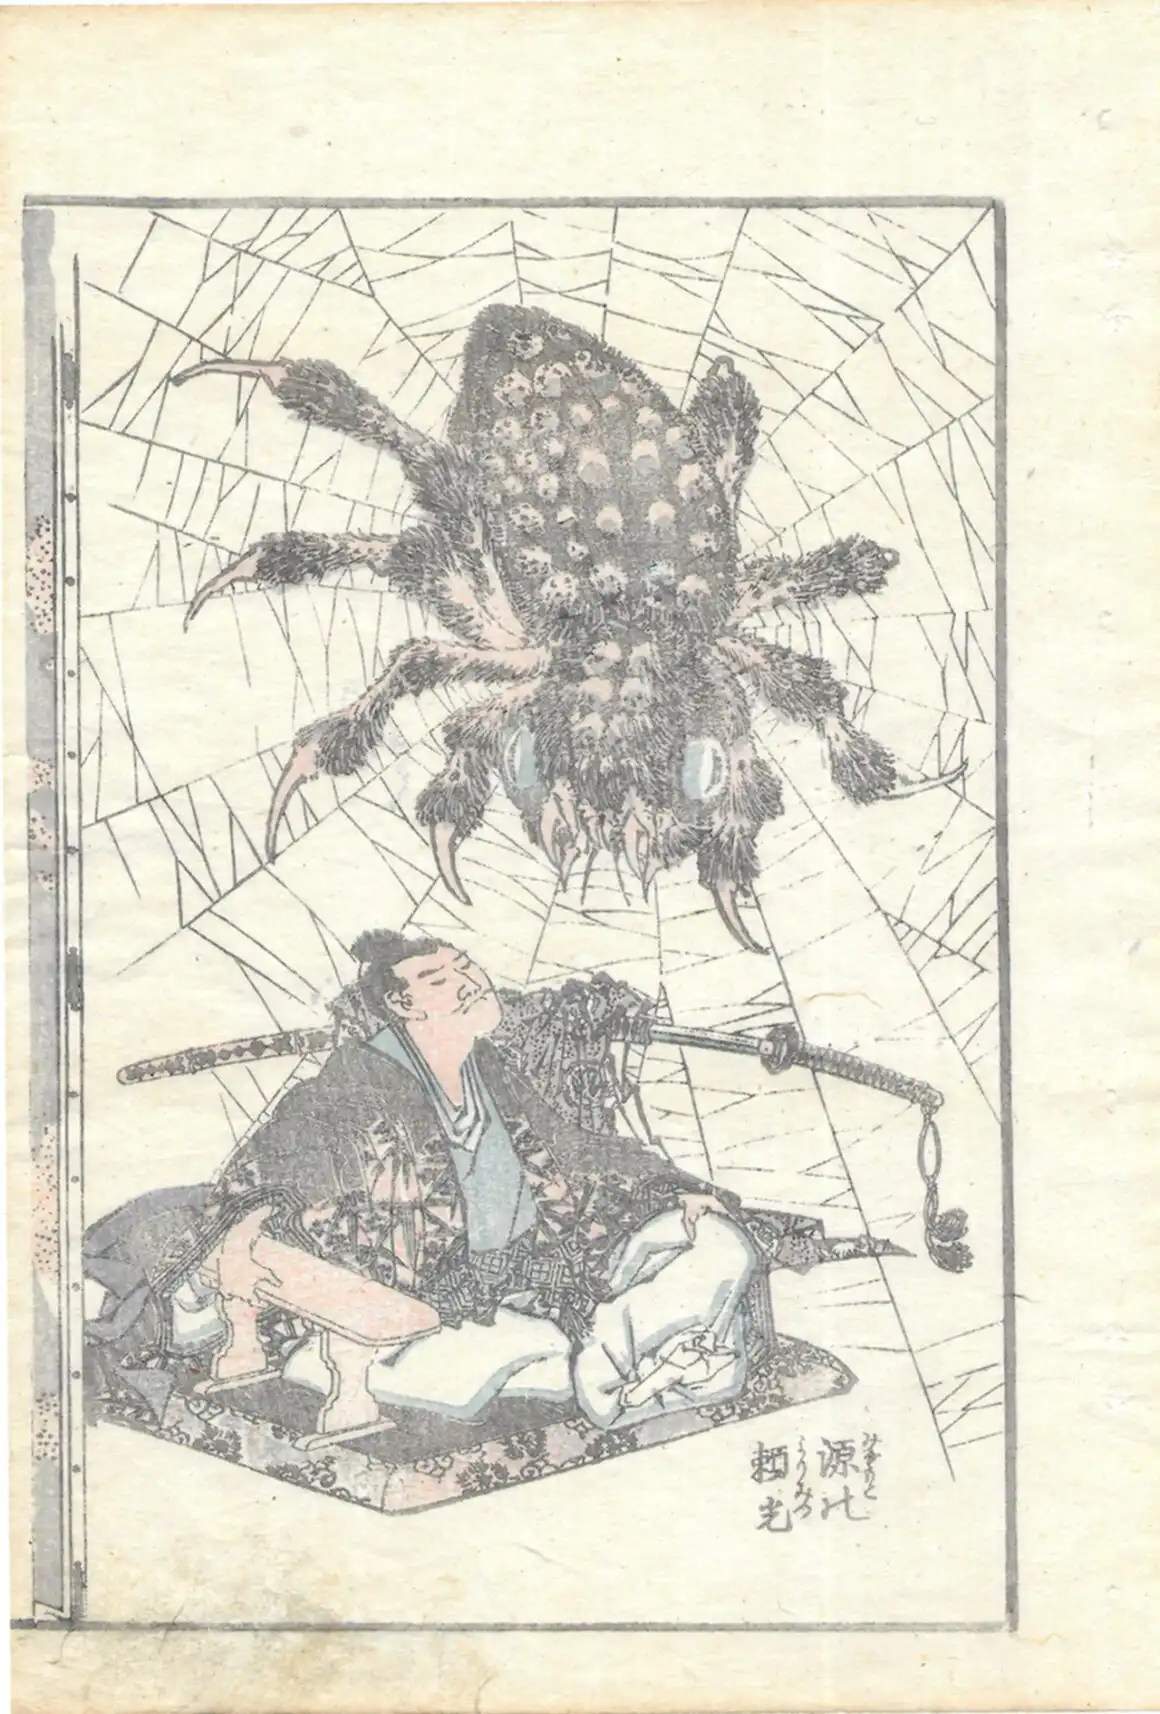 Hokusai Katsushika_Raiko and the earth spider_1849